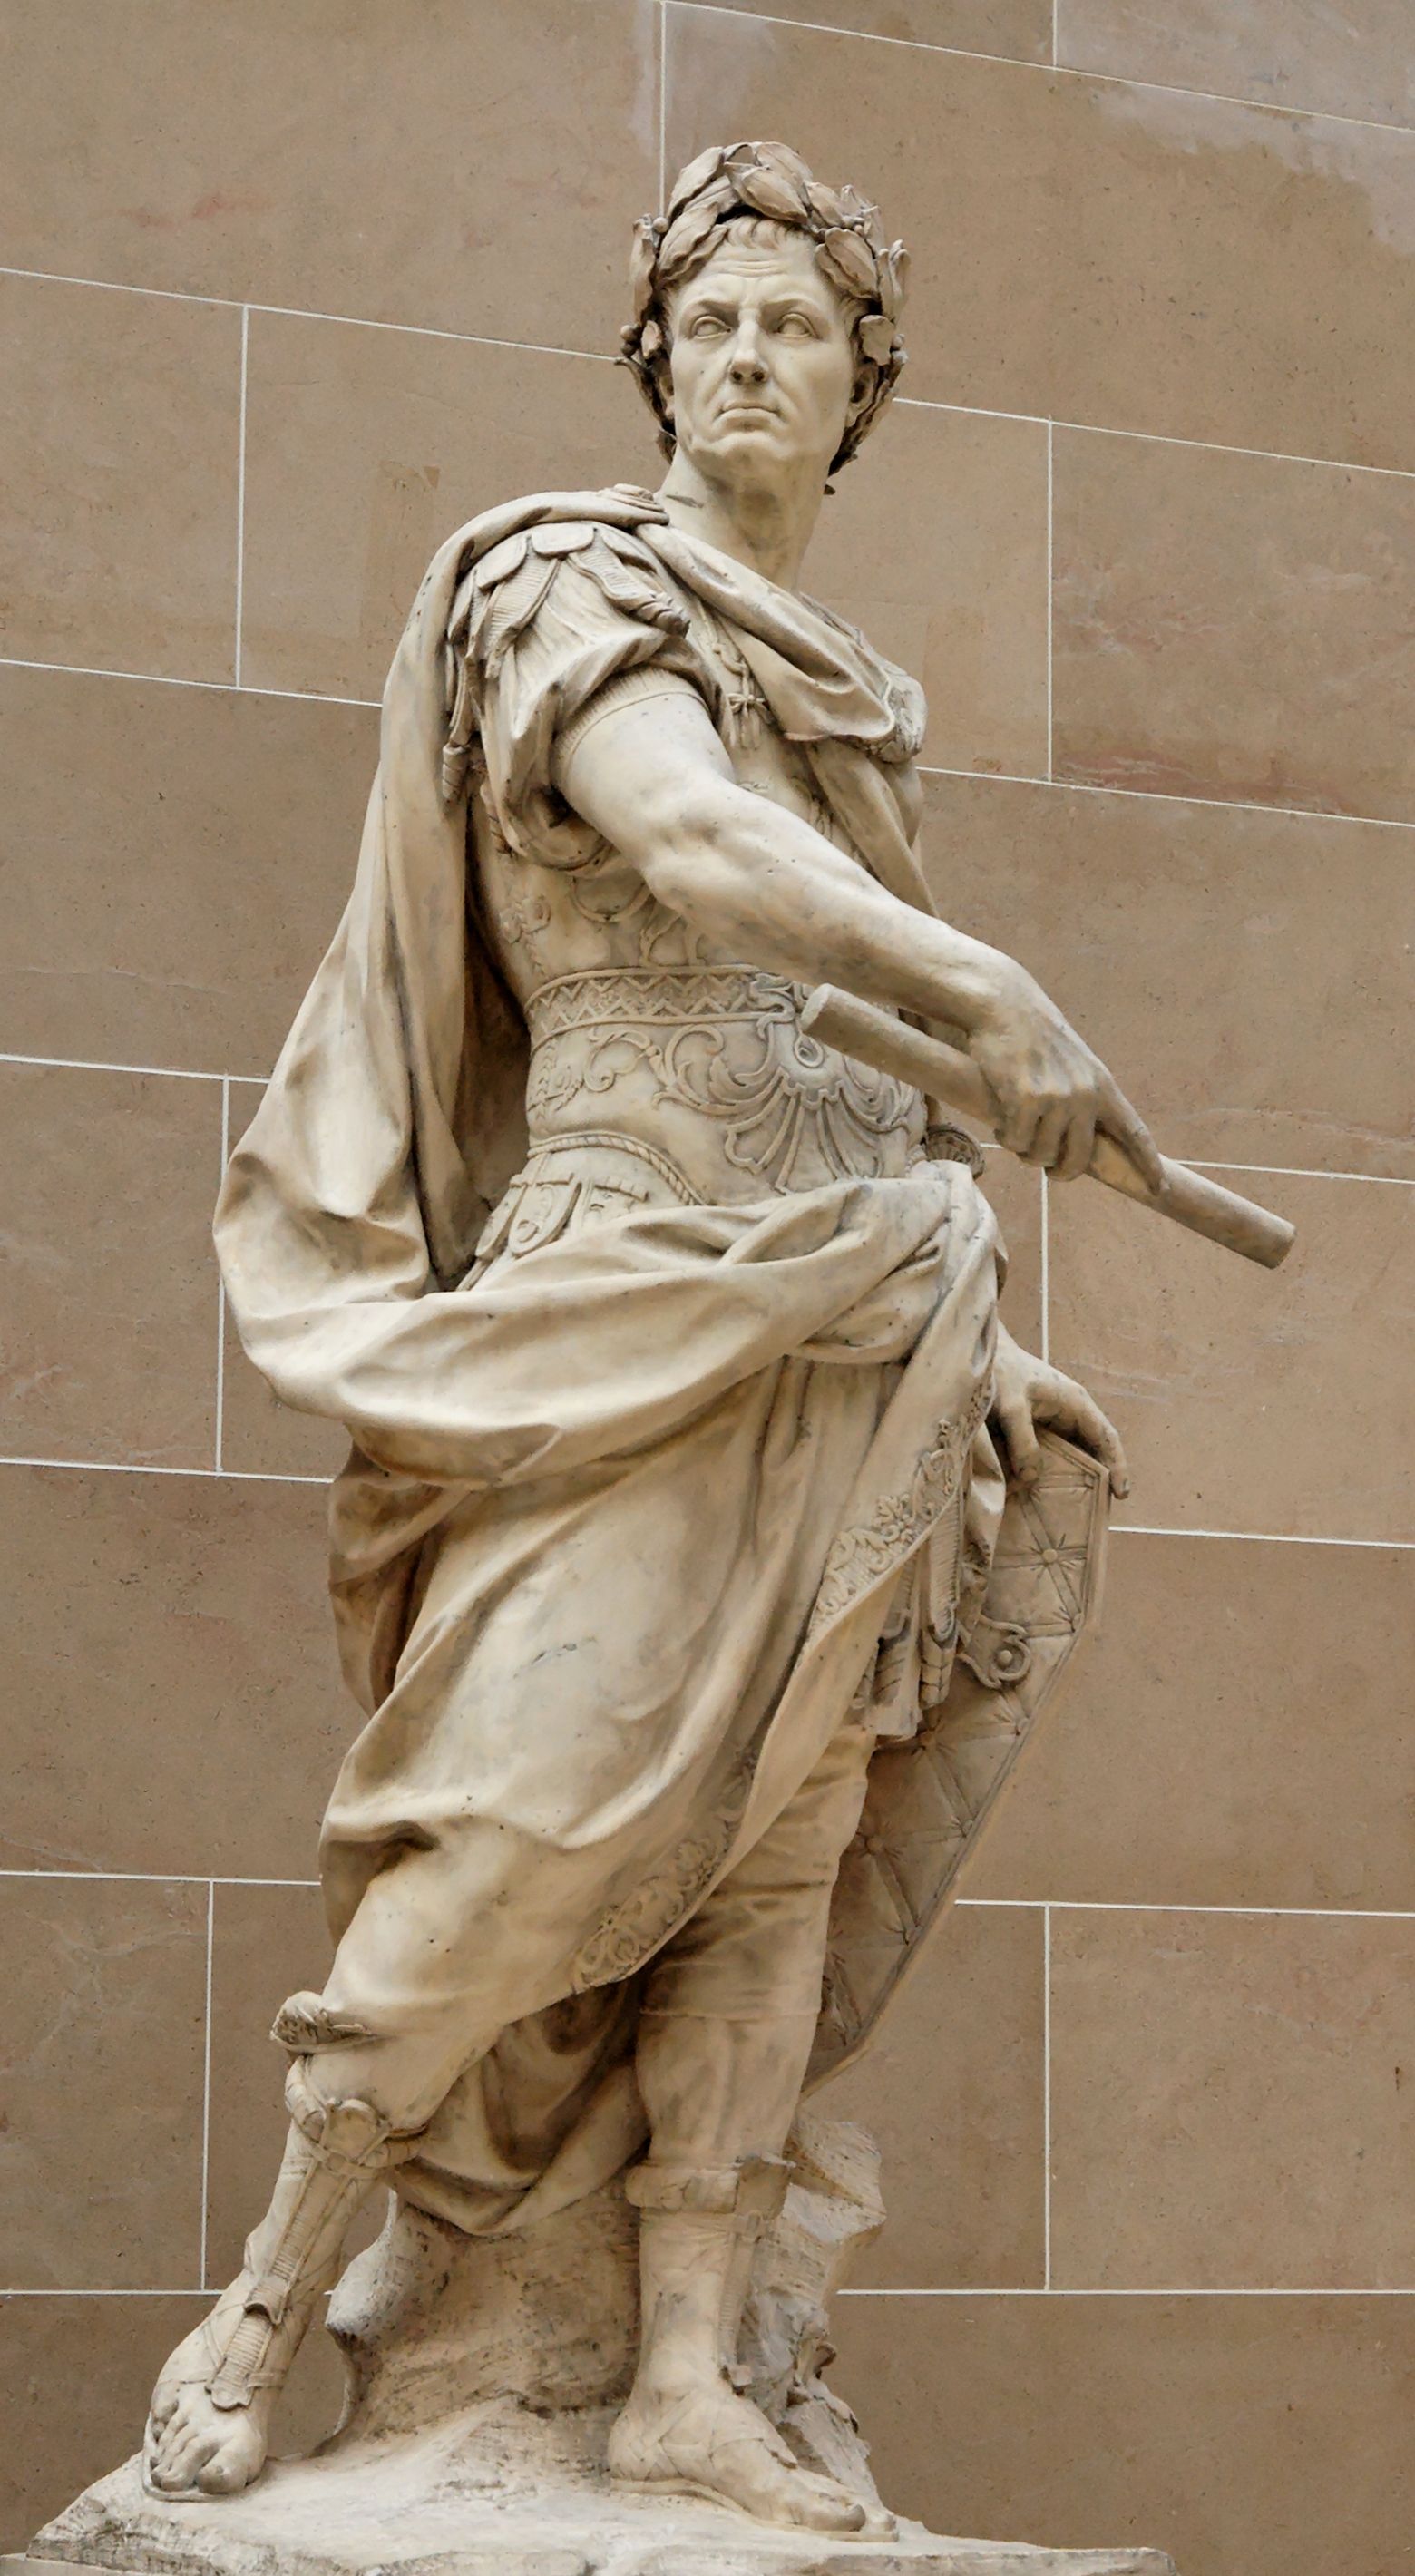 Estàtua de Juli Cèsar, obra de Nicolas Coustou, que es pot veure al Louvre